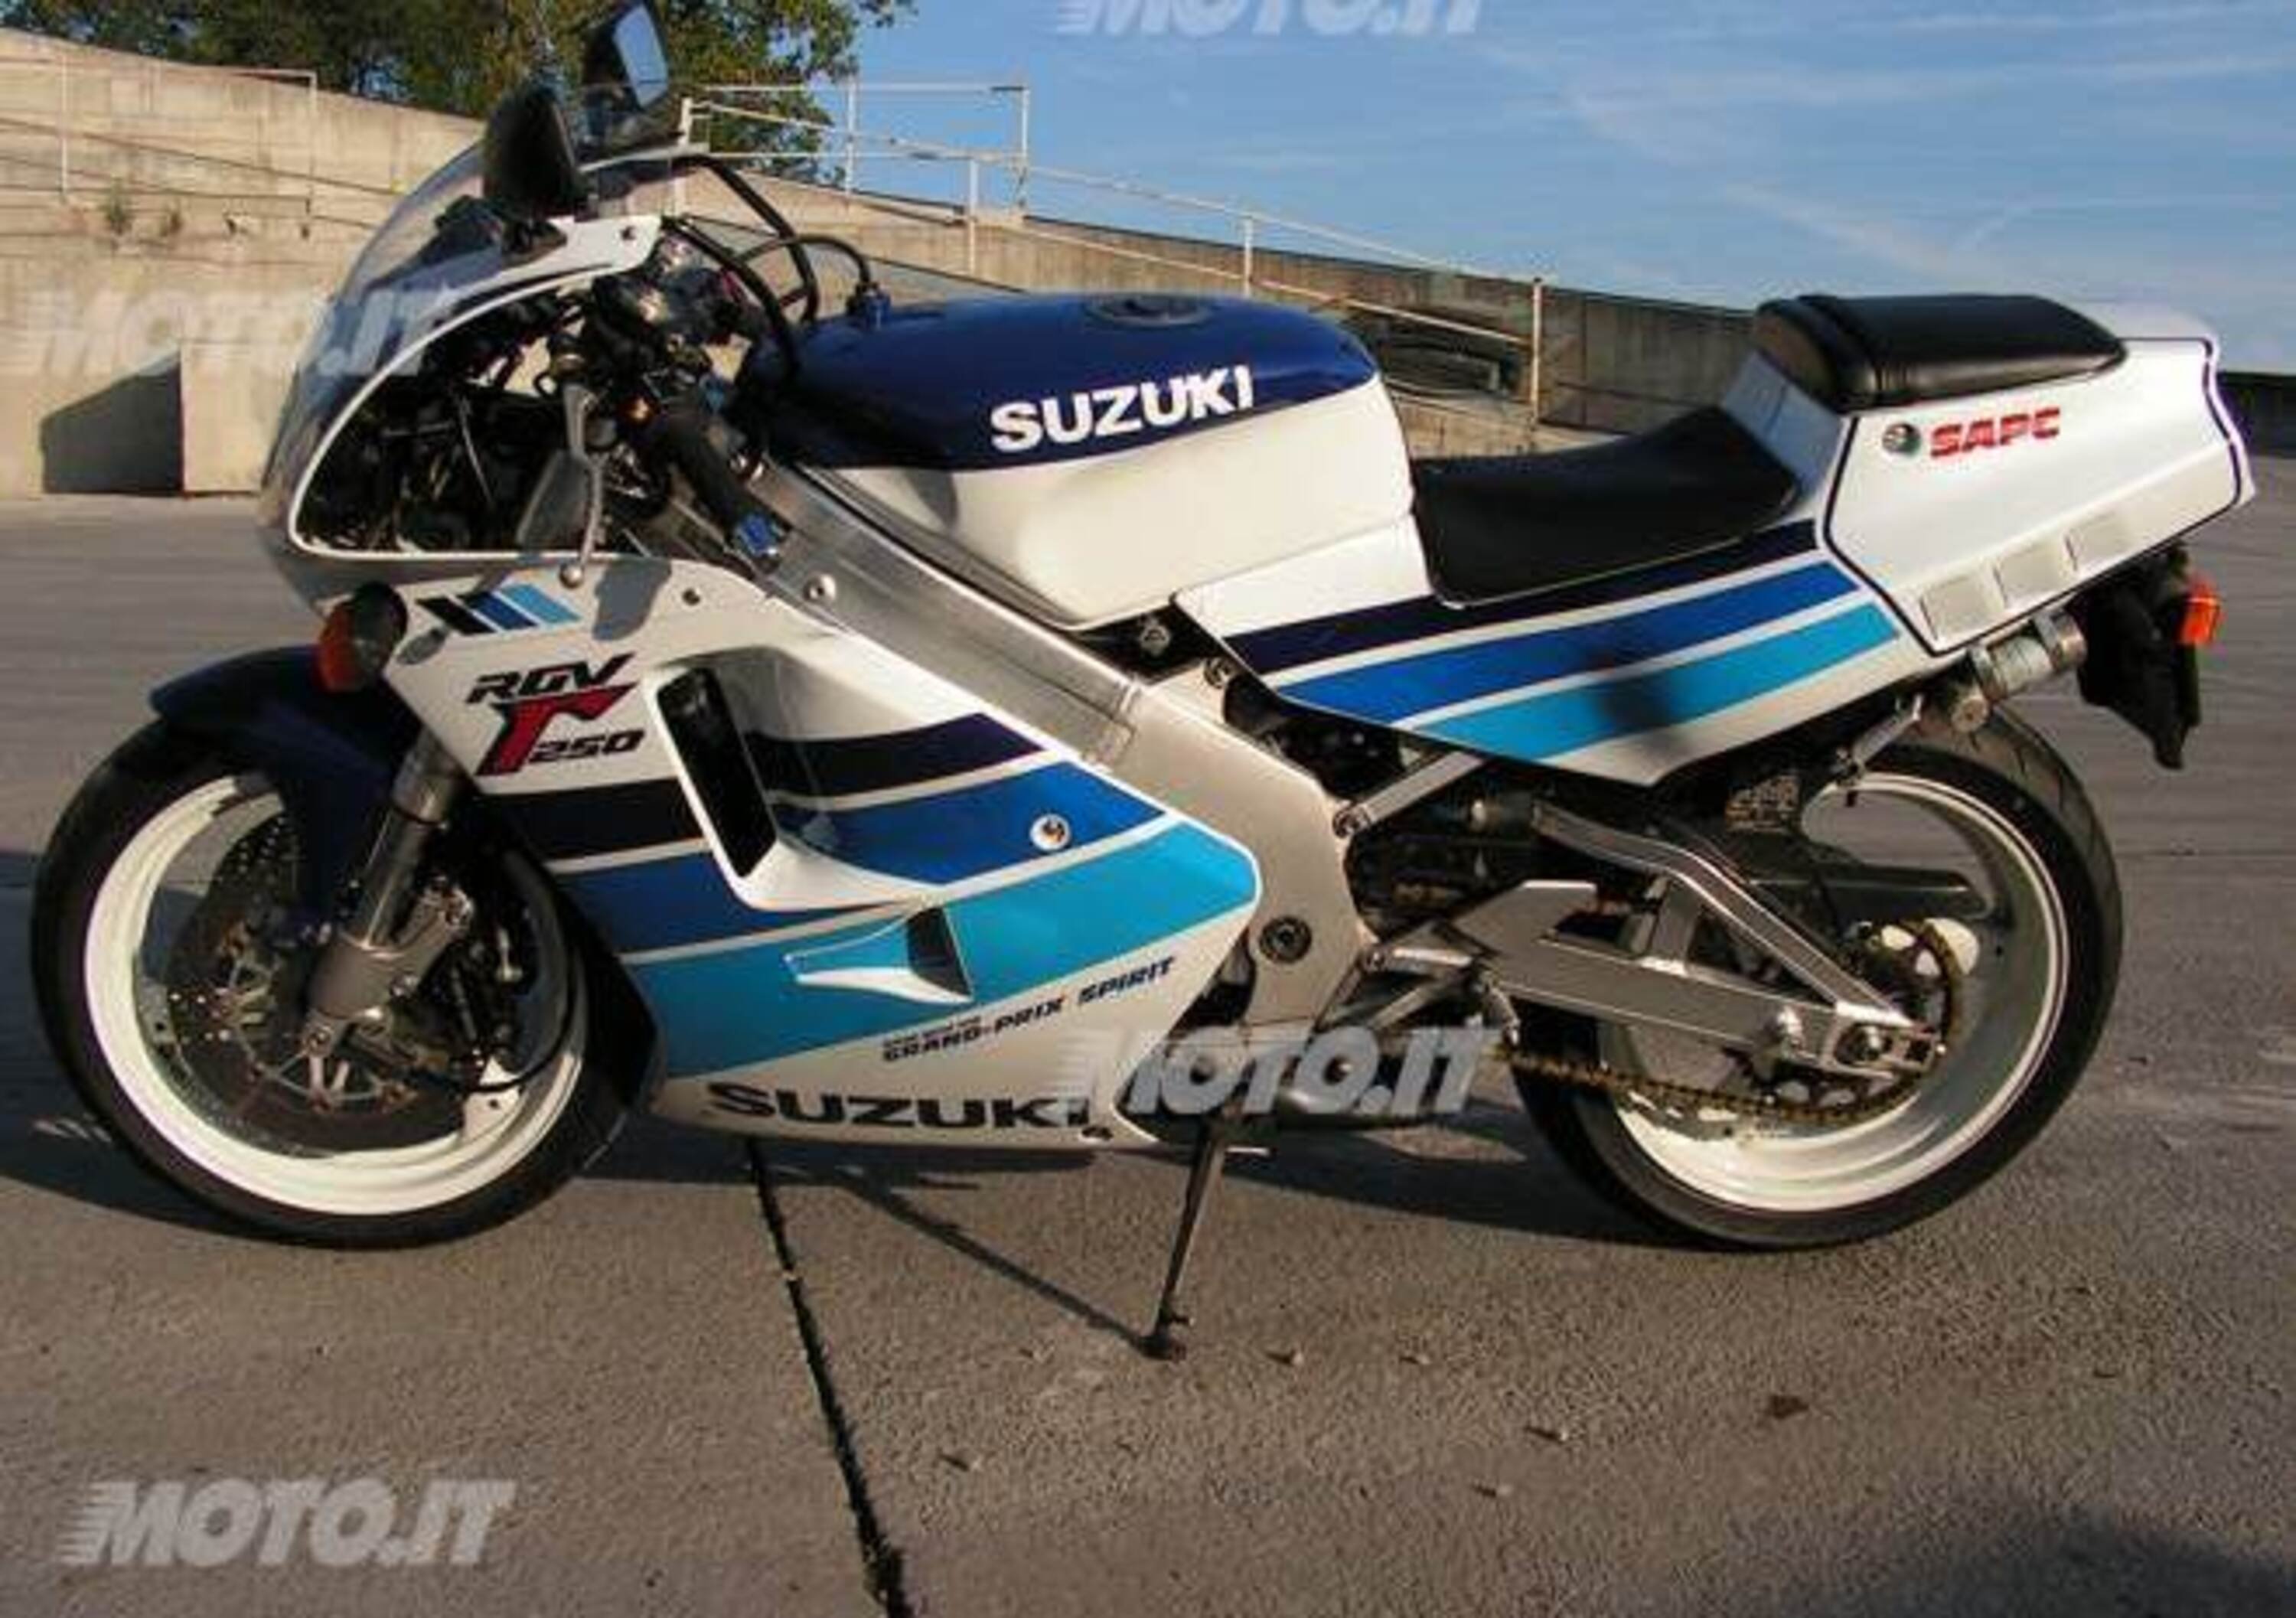 Le Belle e possibili di Moto.it: Suzuki RGV 250